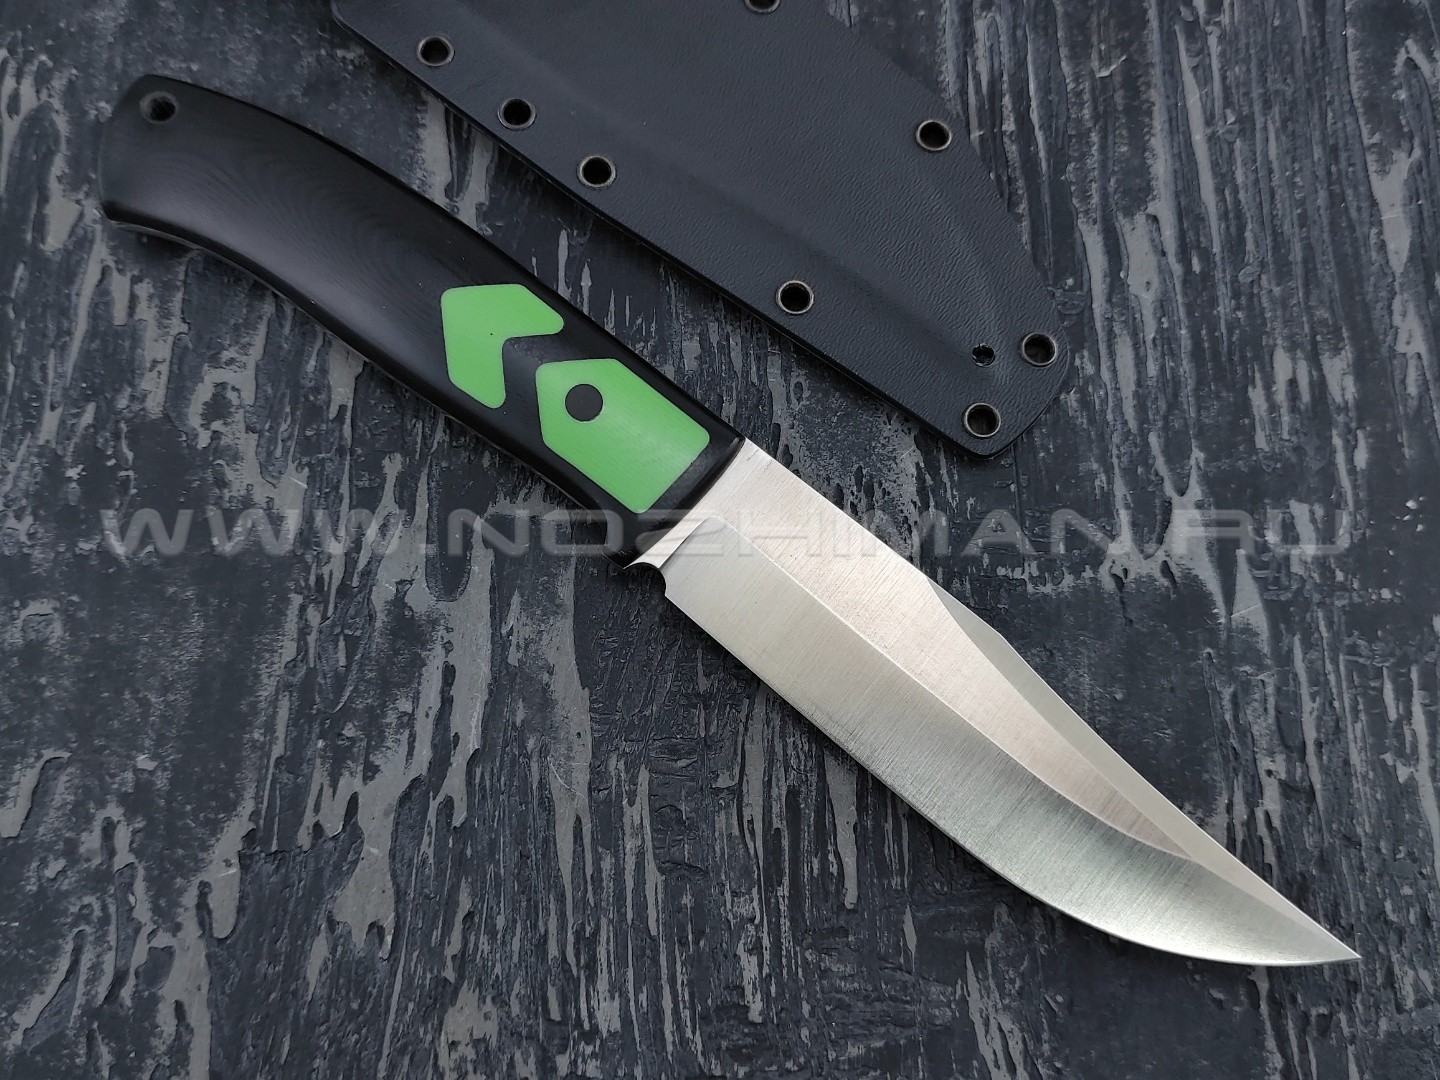 Apus Knives нож Destruktor WEST сталь N690, рукоять G10 black & green